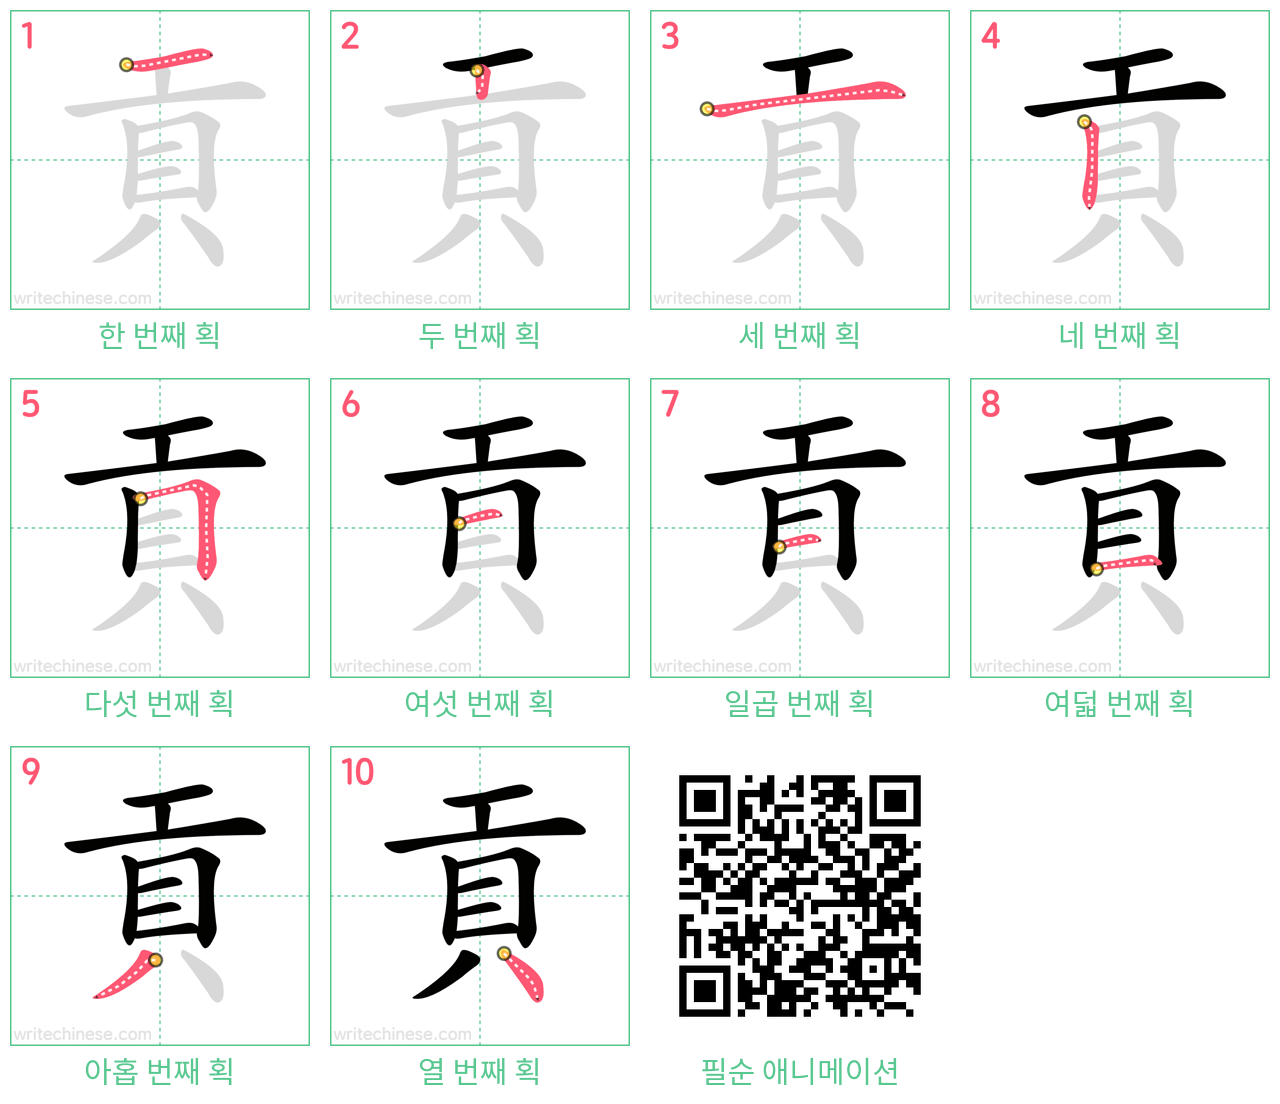 貢 step-by-step stroke order diagrams